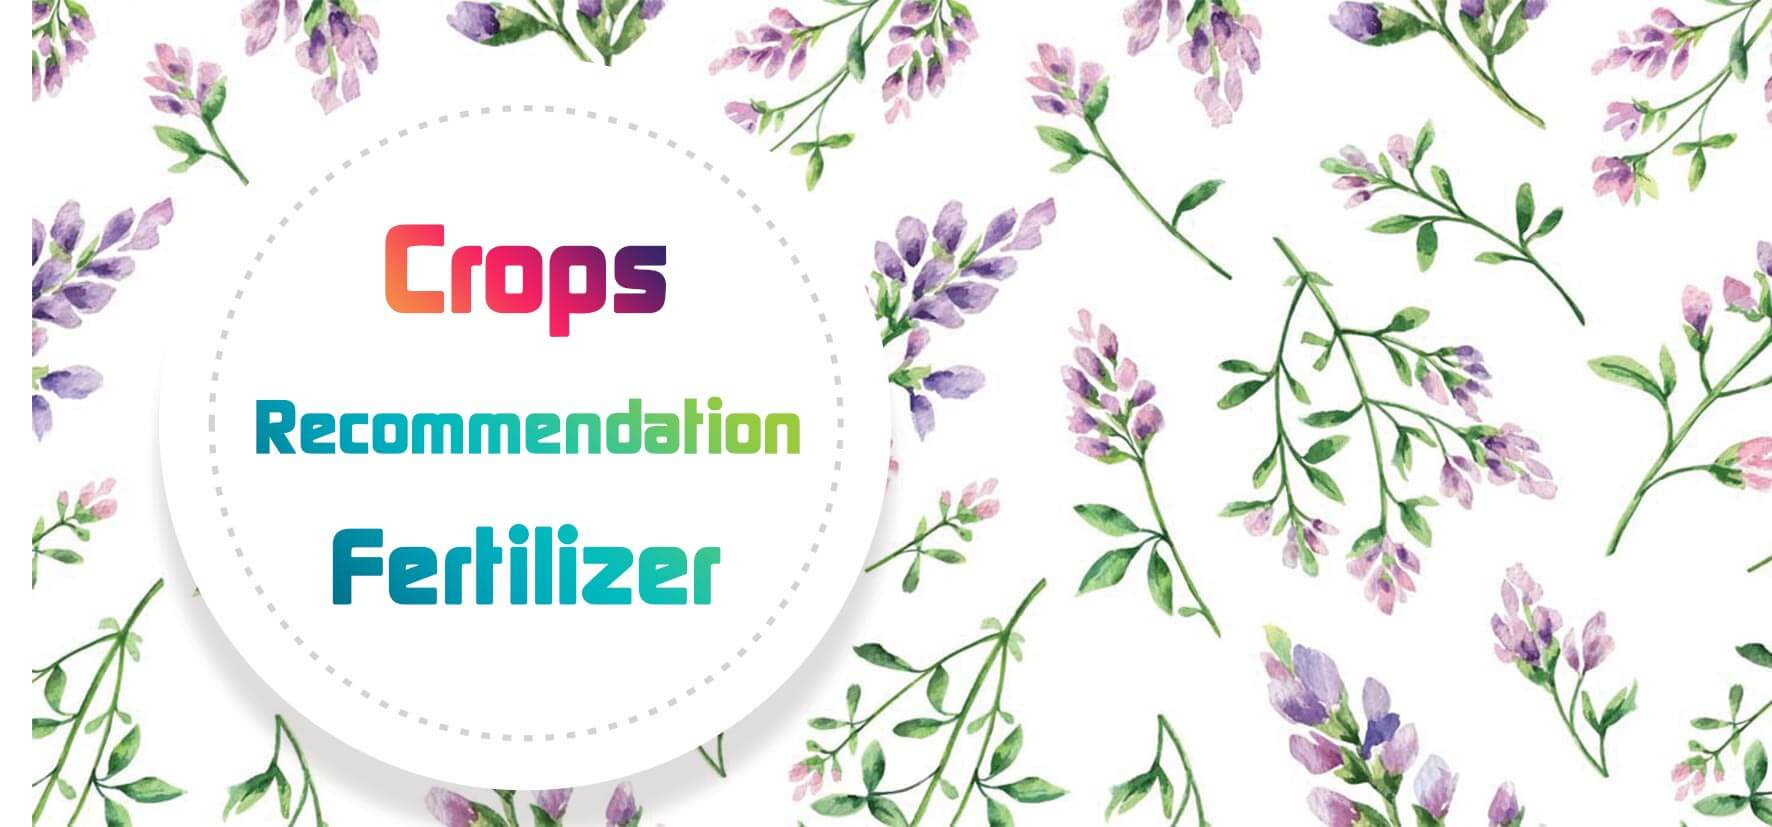 Crops fertilizer recommendation